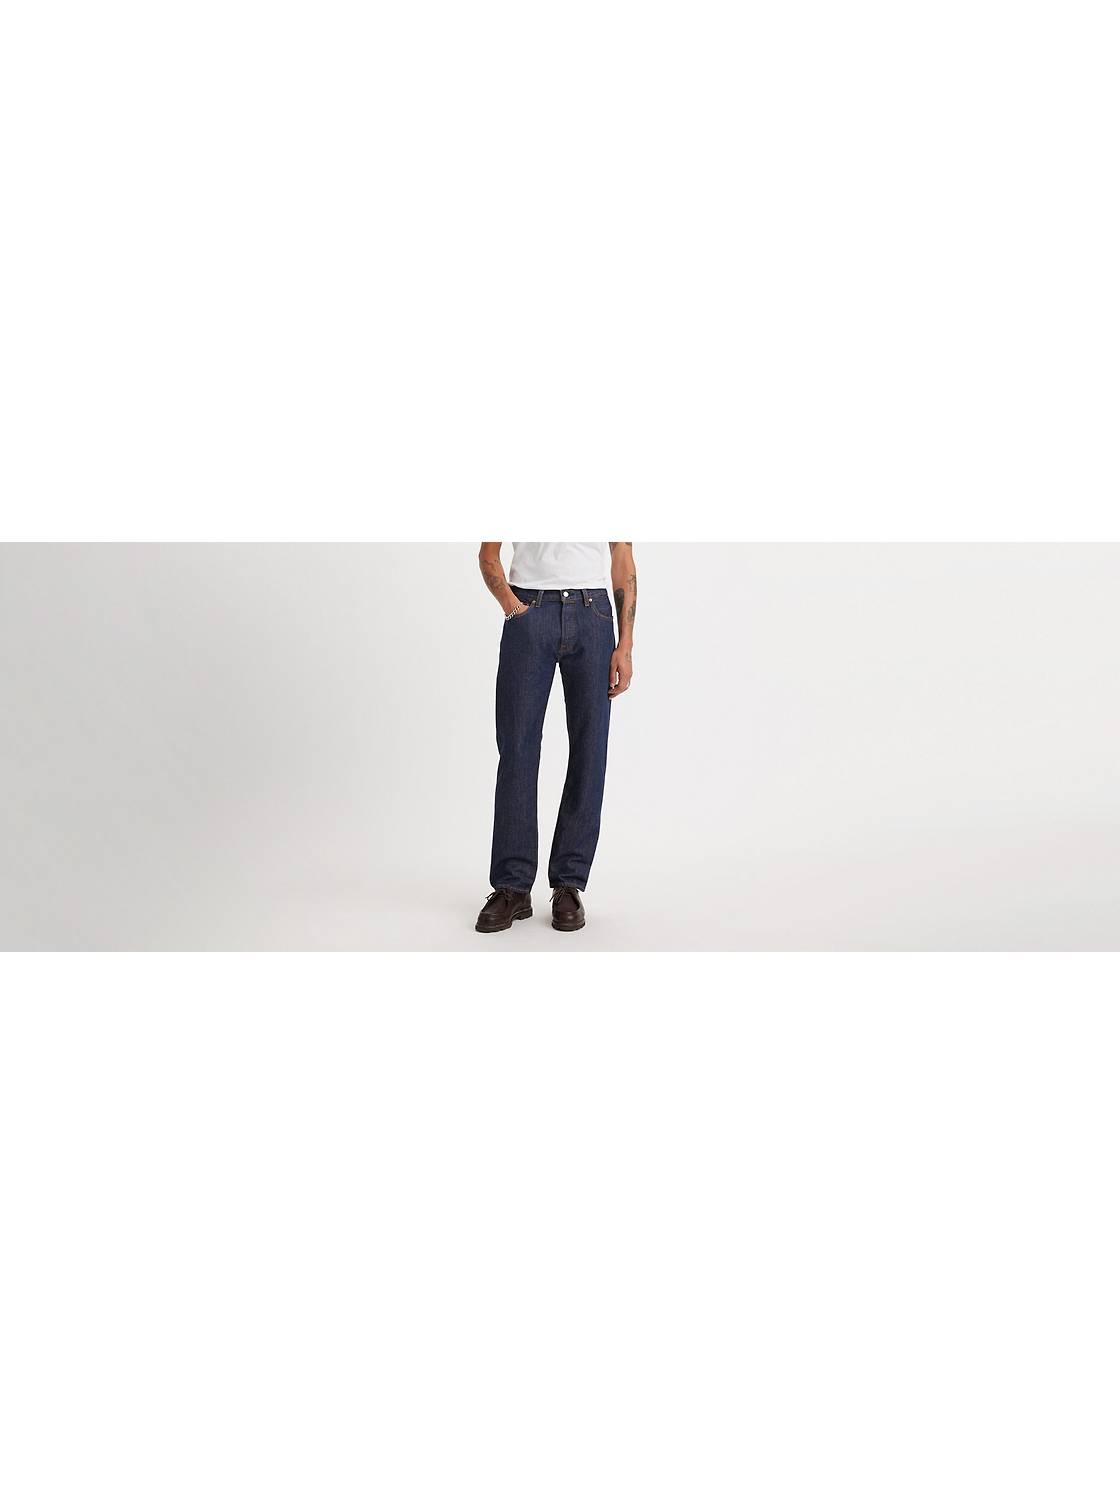 dræne Suri amplifikation Men's 501® Jeans - Shop 501® Original Fit Jeans | Levi's® US